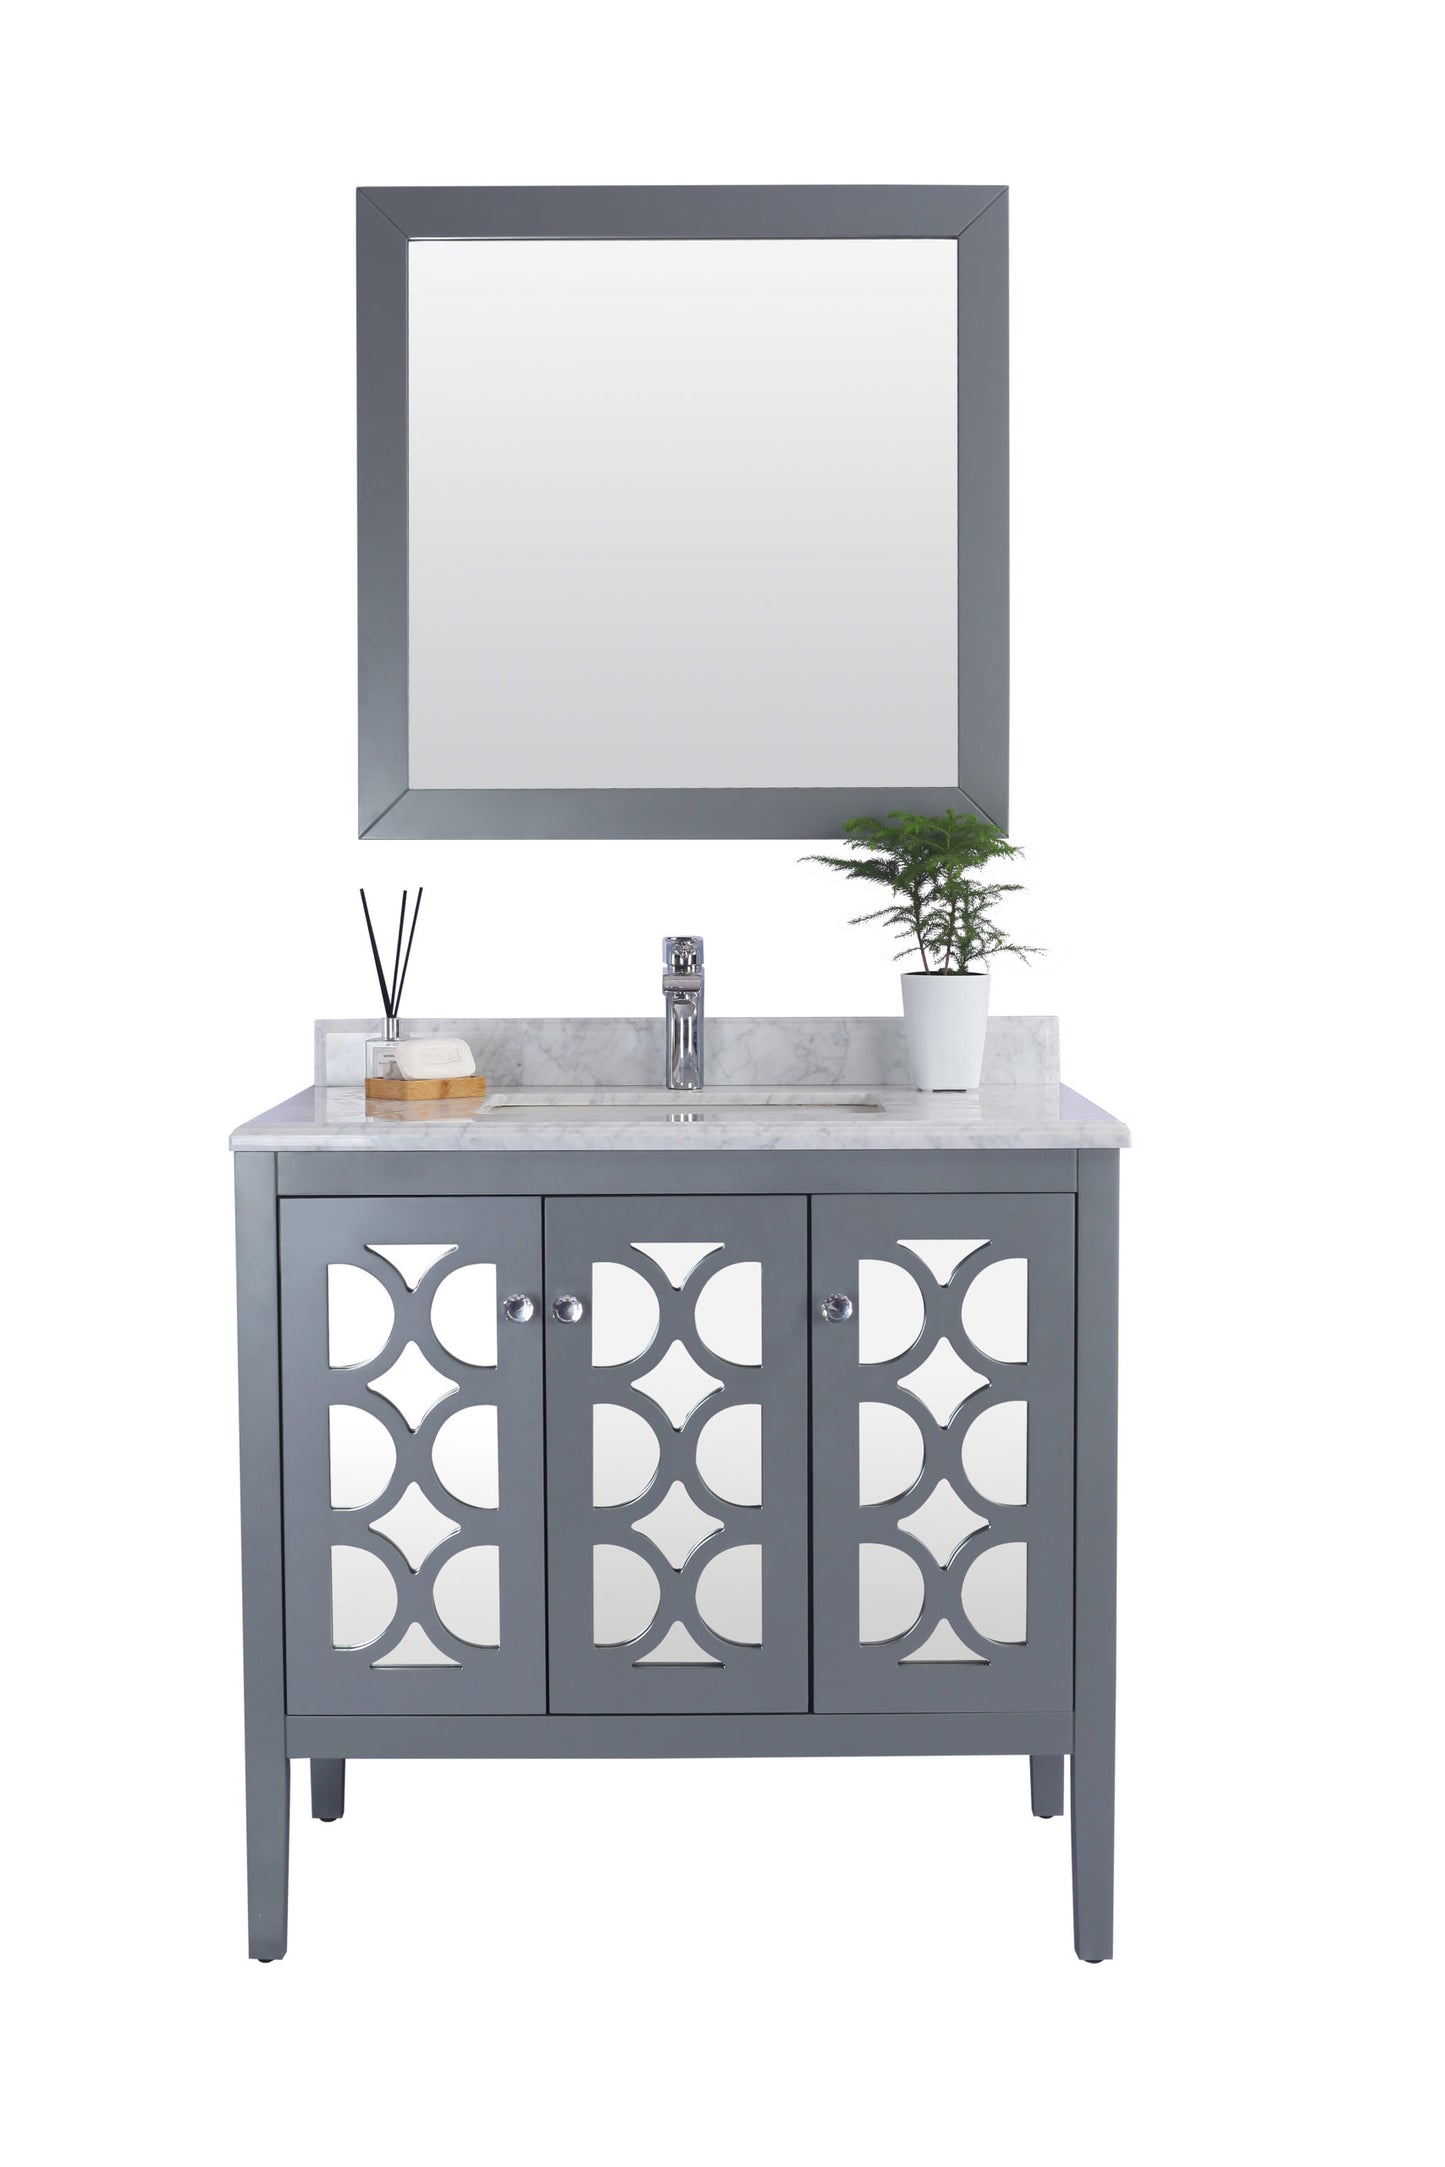 Mediterraneo 36" Grey Bathroom Vanity with White Carrara Marble Countertop